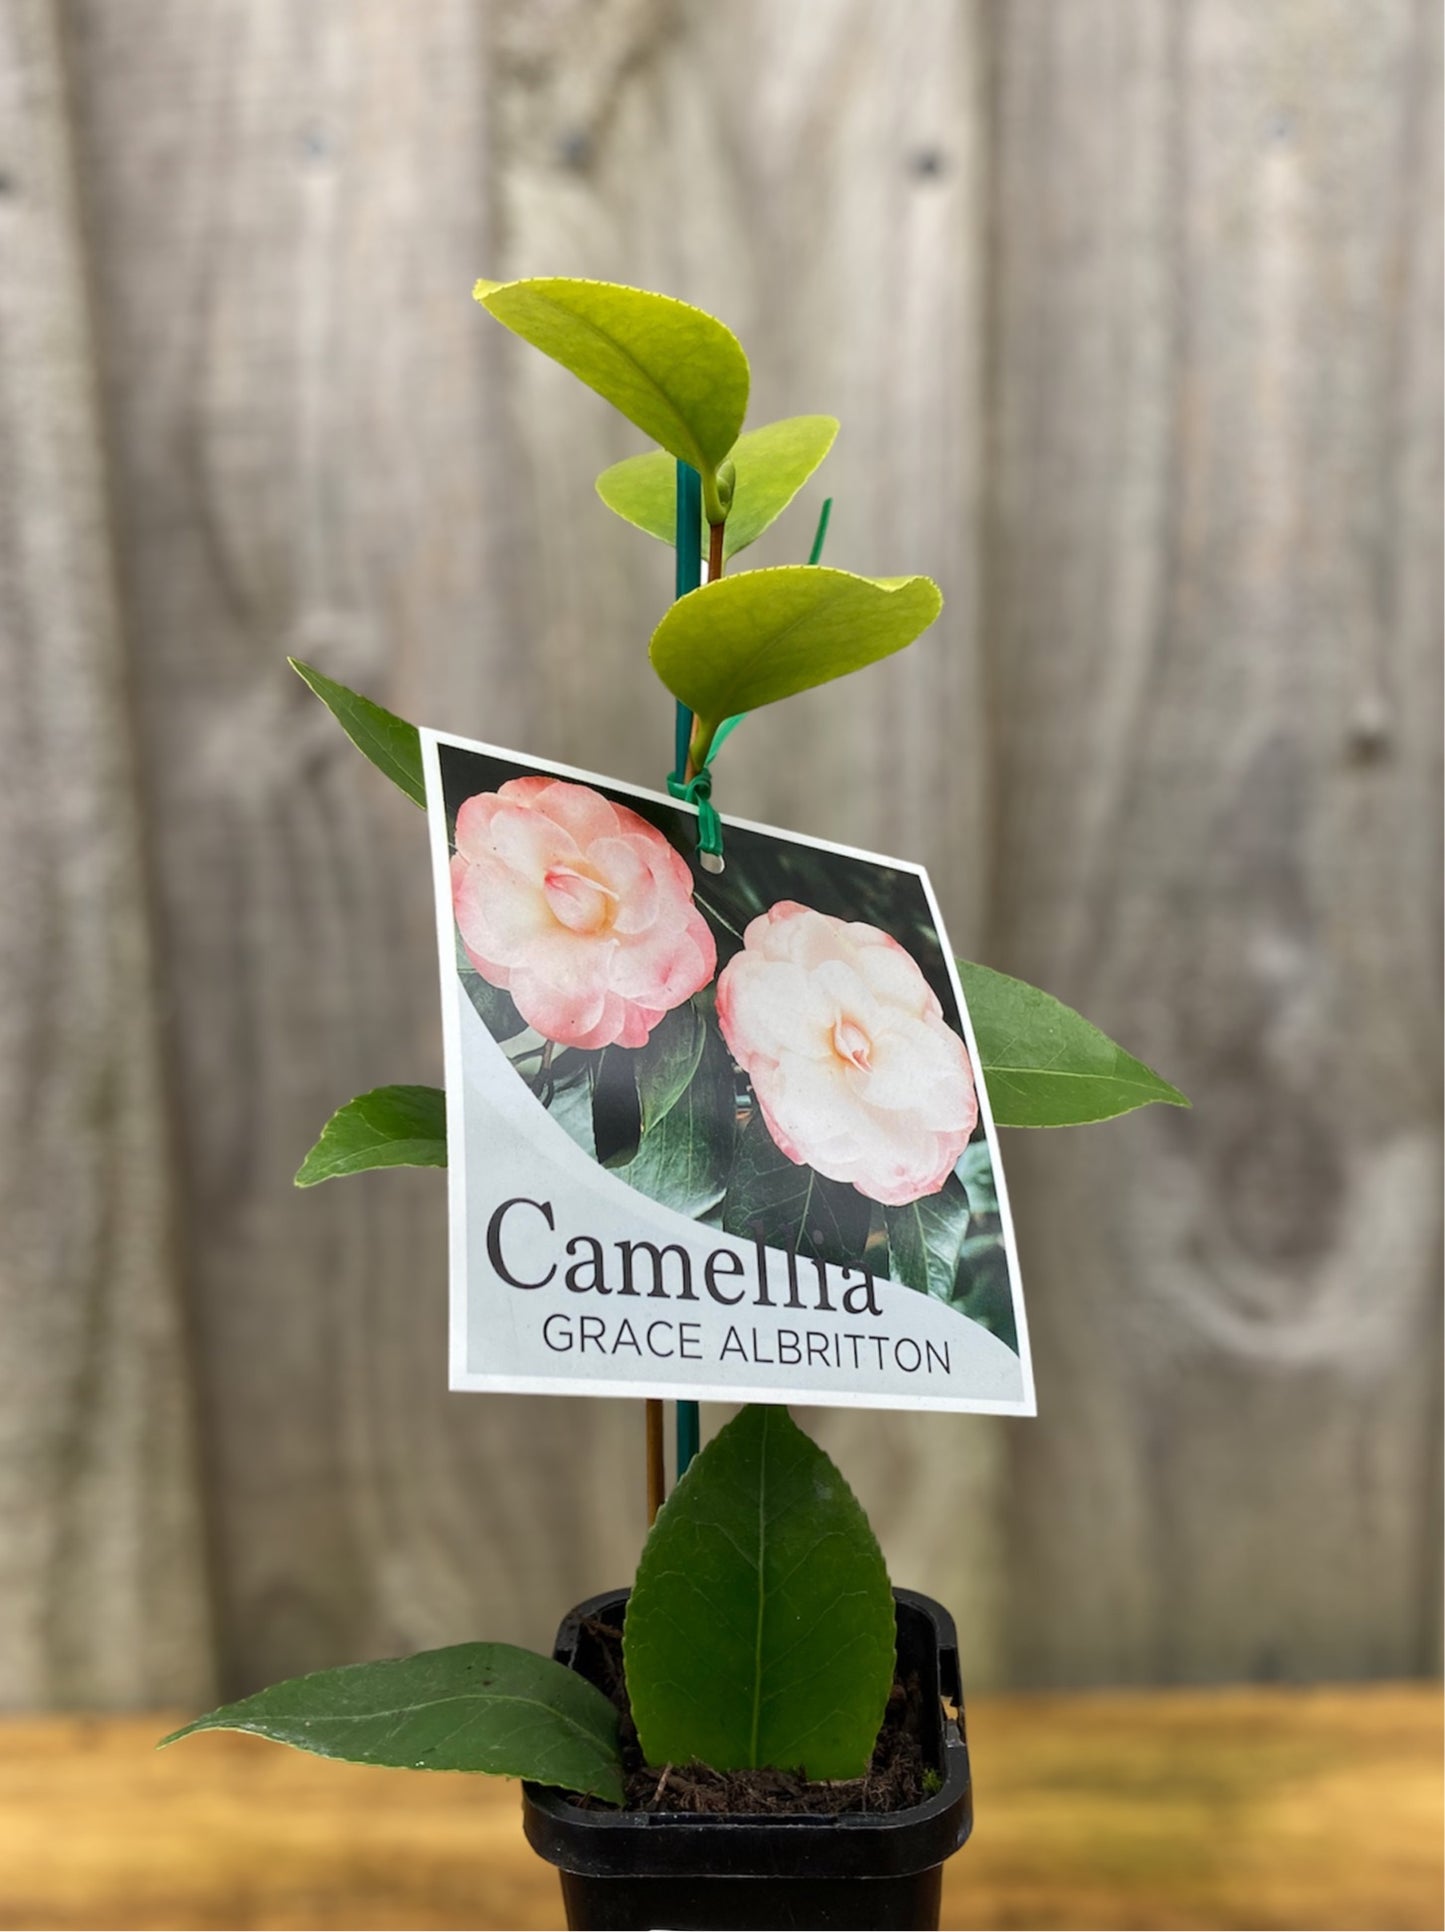 Camellia japonica ‘Grace Albritton’ 7cm